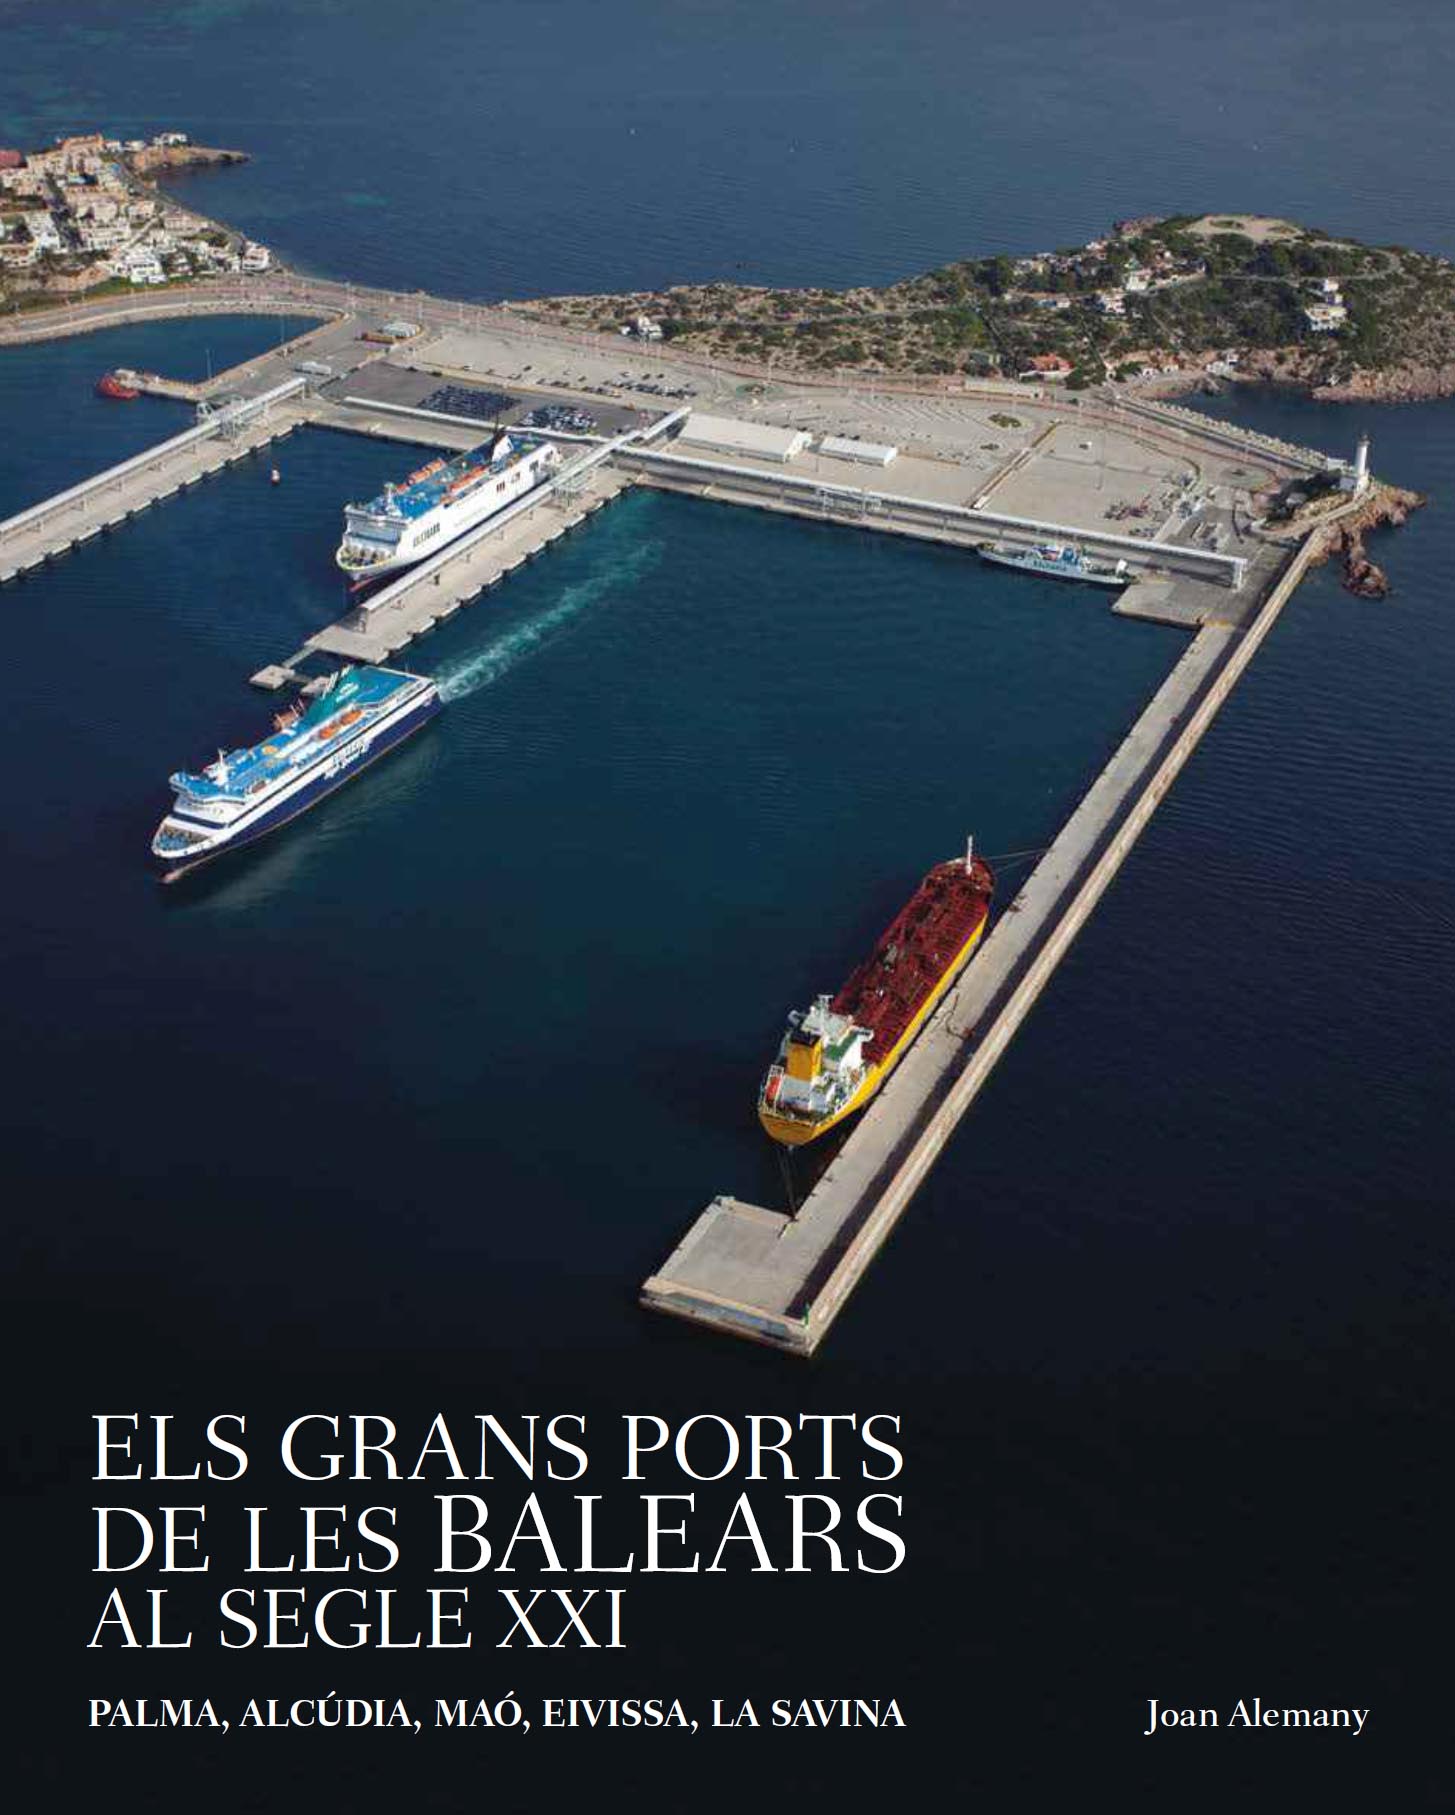 La APB presenta la segunda edición del libro ‘Los grandes puertos de las Baleares en el siglo XXI’